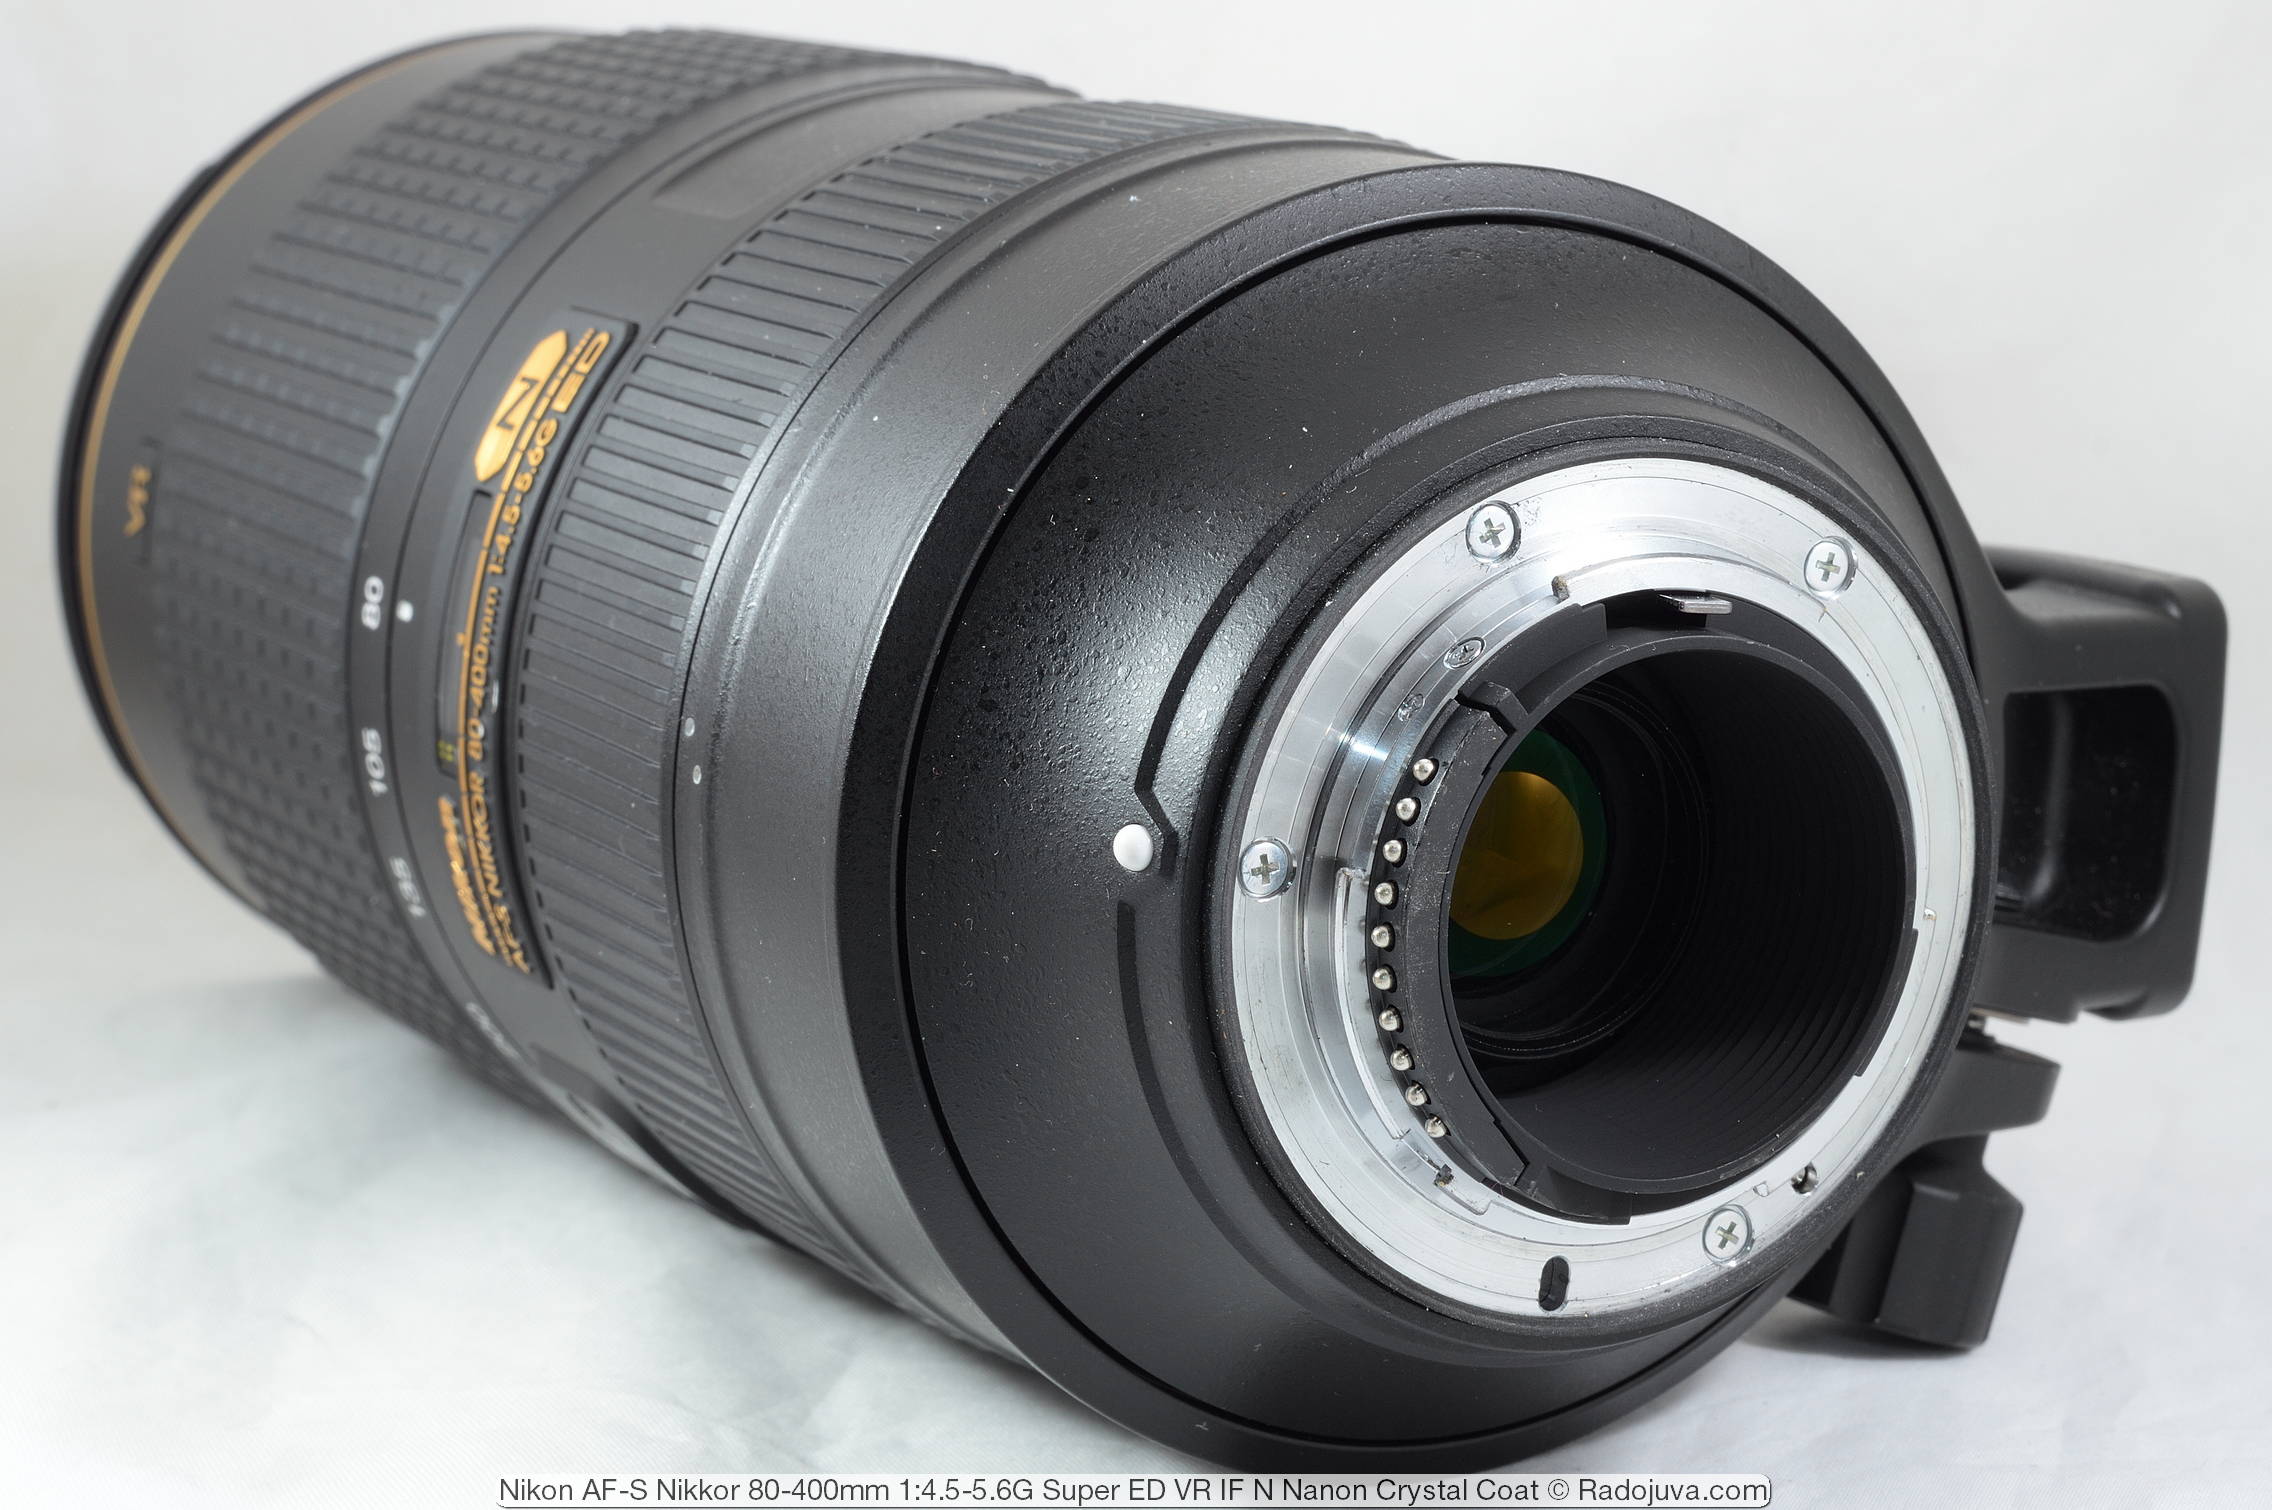 Nikon AF-S Nikkor 80-400mm 1:4.5-5.6G Super ED VR IF N Nano Crystal Coat